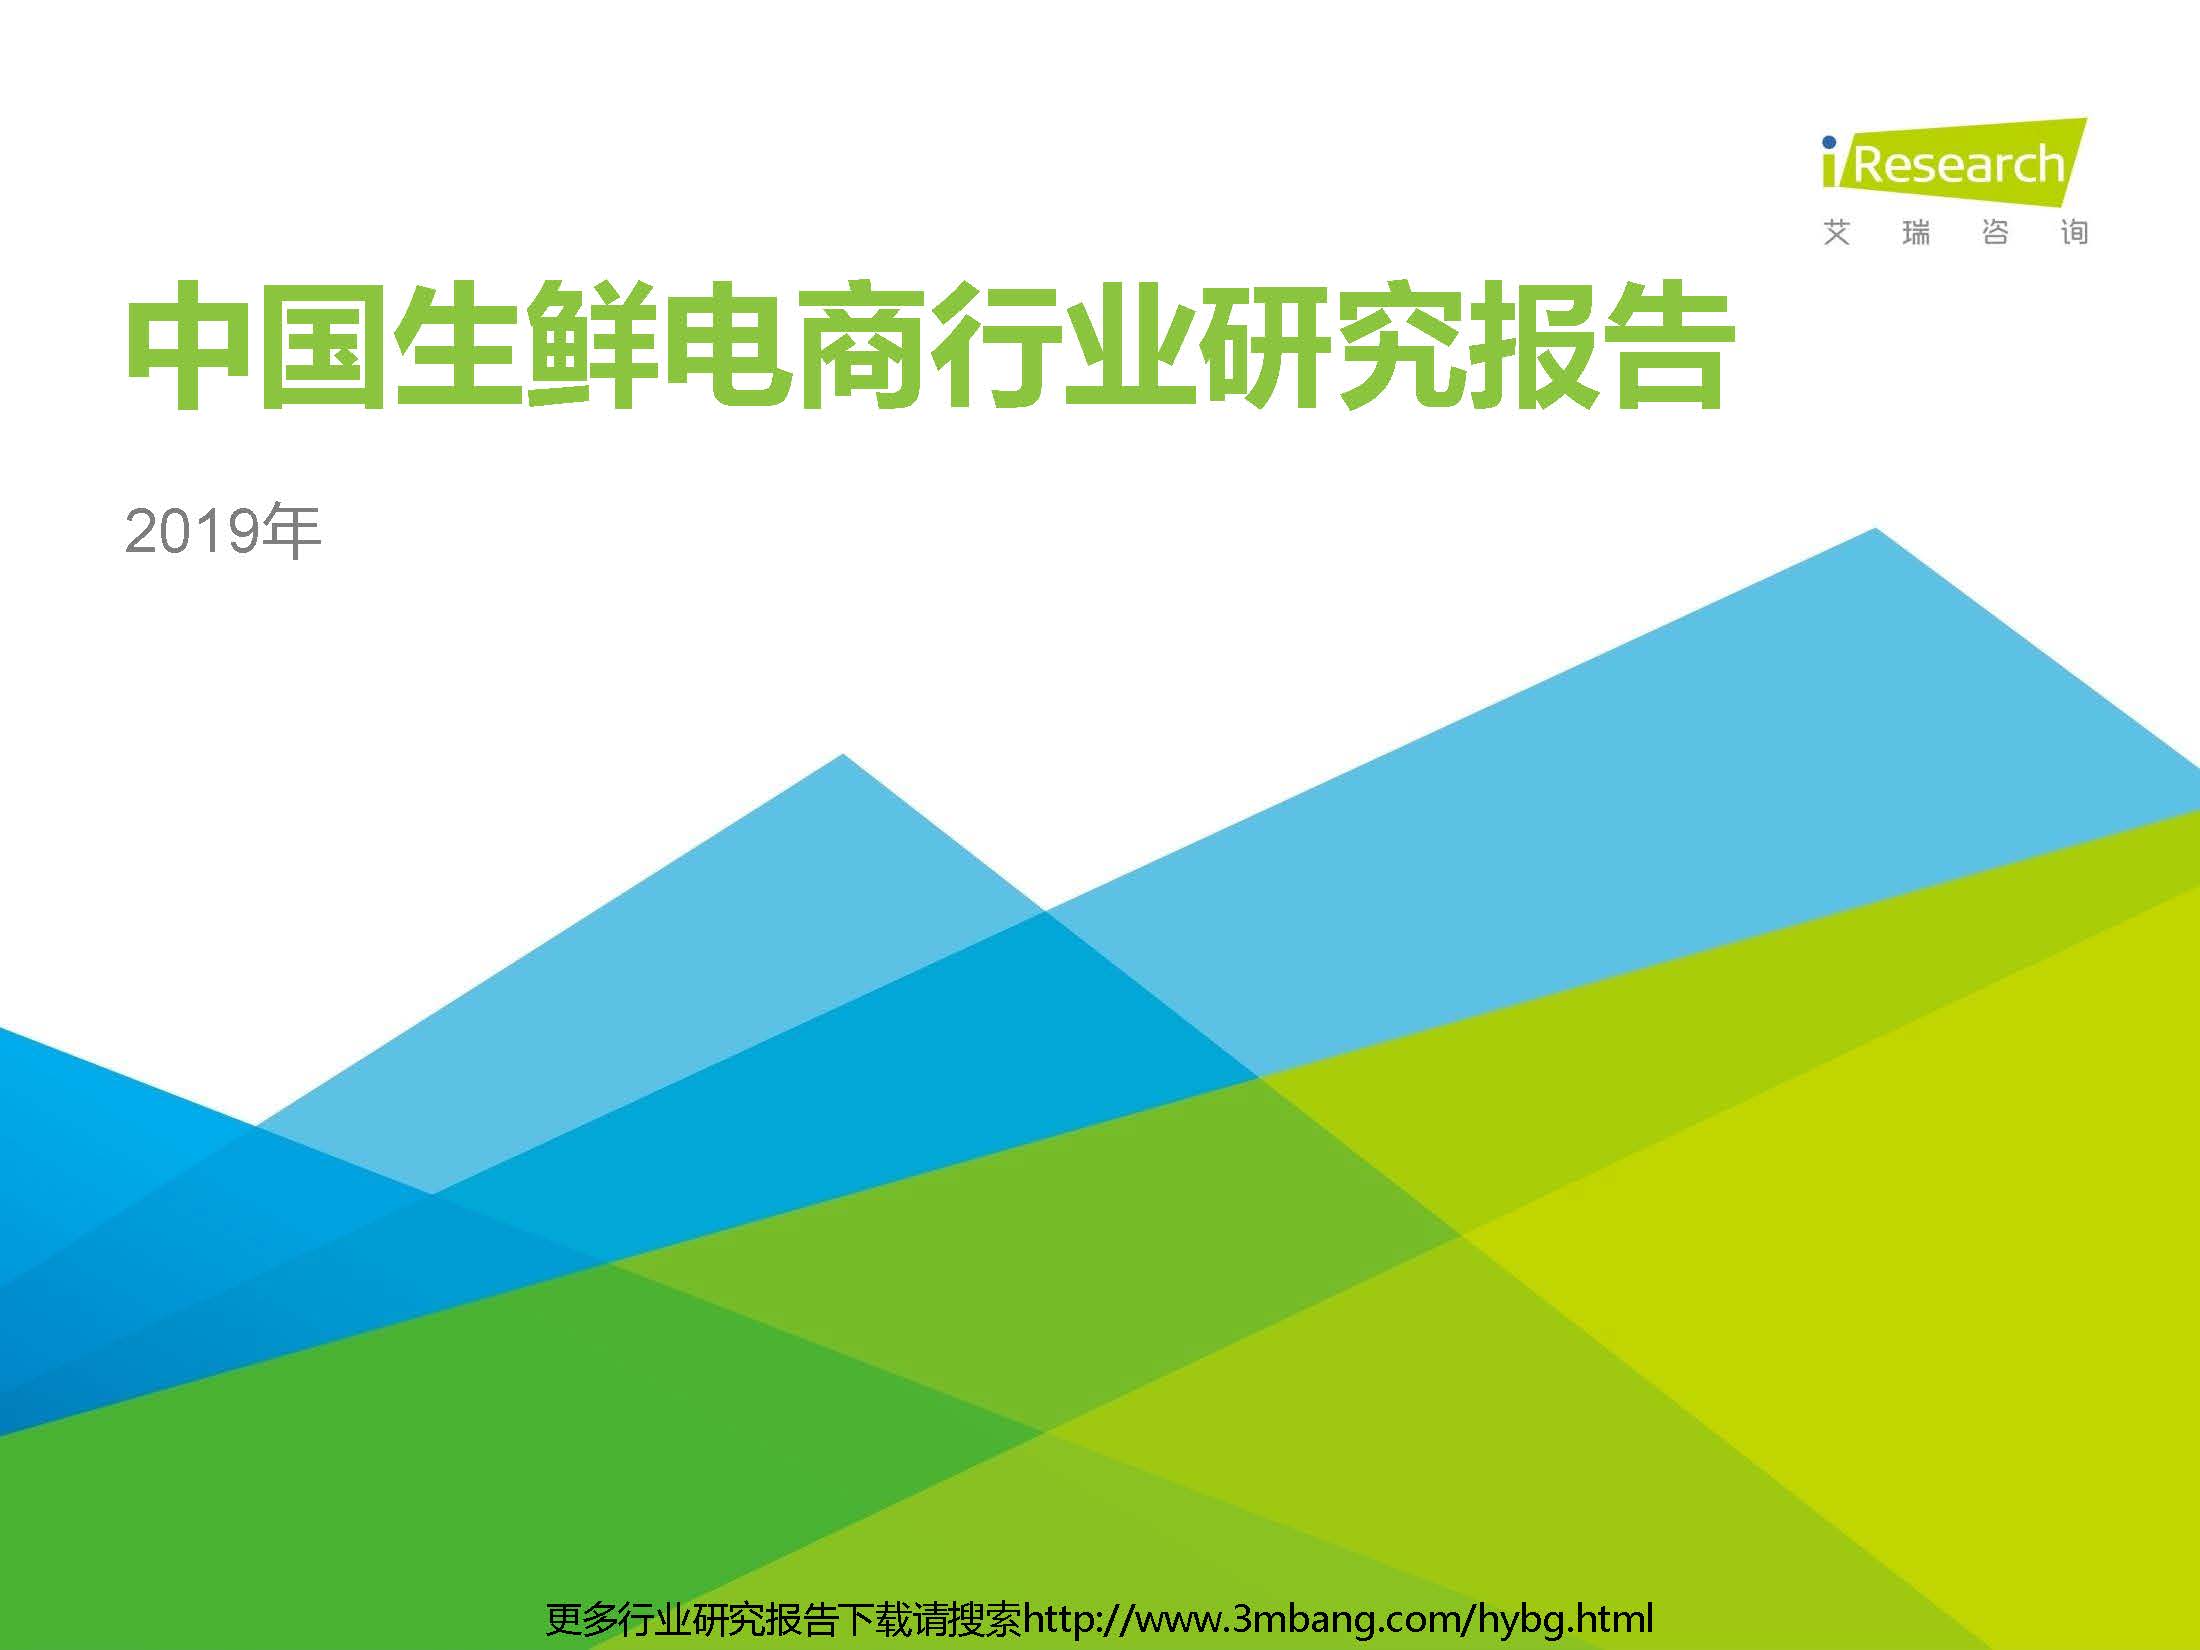 艾瑞：2019年中国生鲜电商行业研究报告（附下载地址）